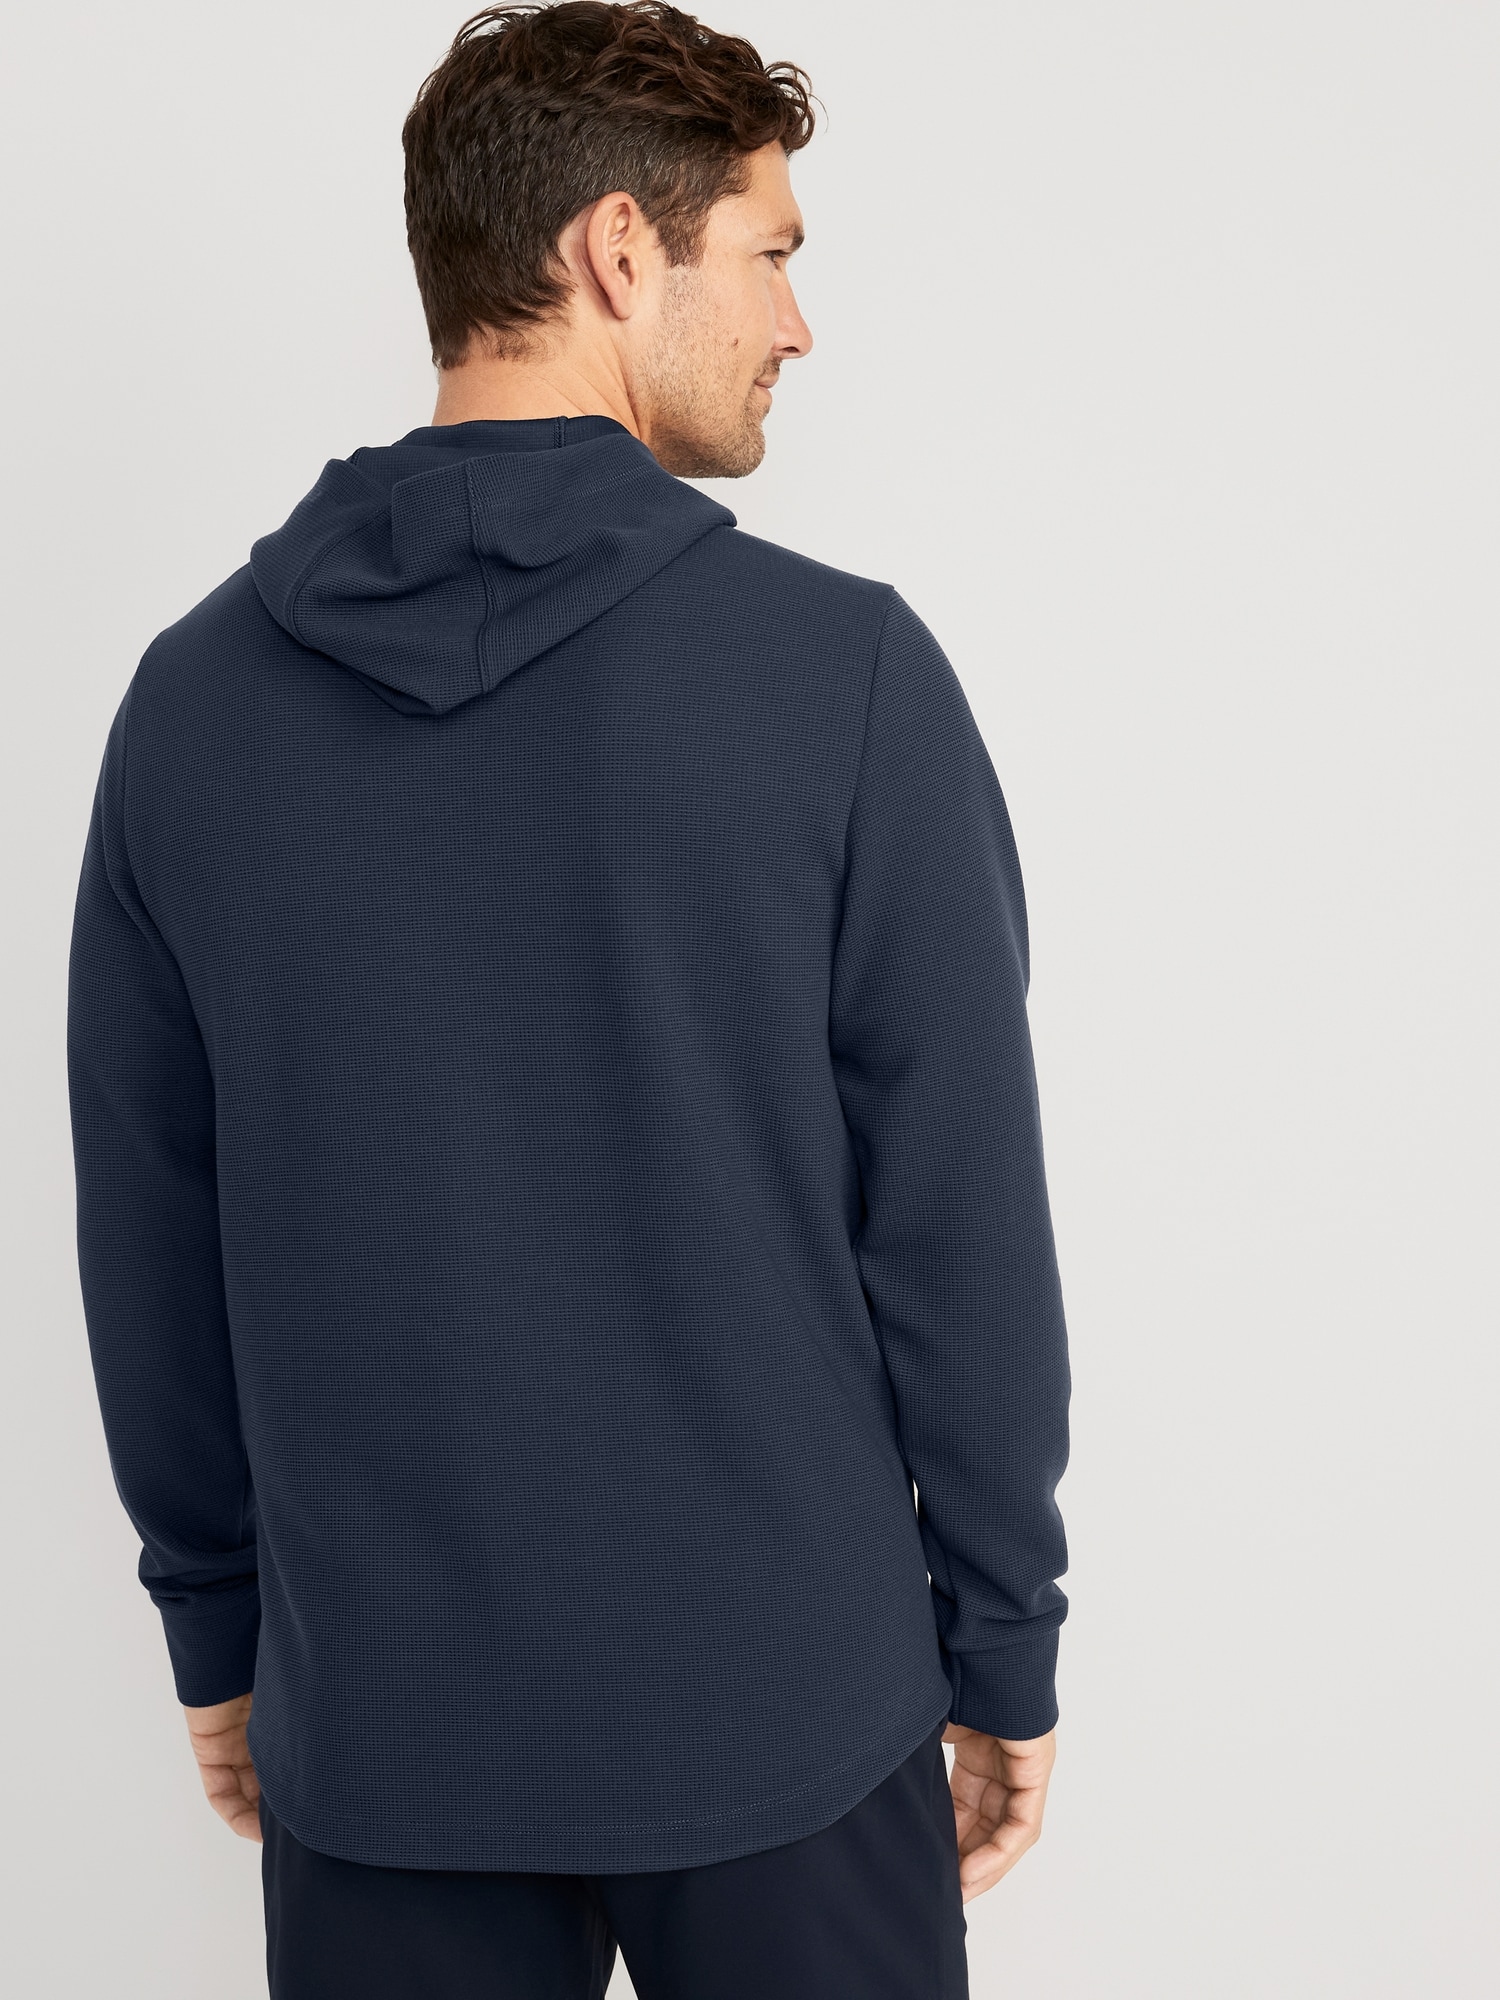 ALL IN MOTION - Soft Fleece Full Zip Hoodie Jacket – Beyond